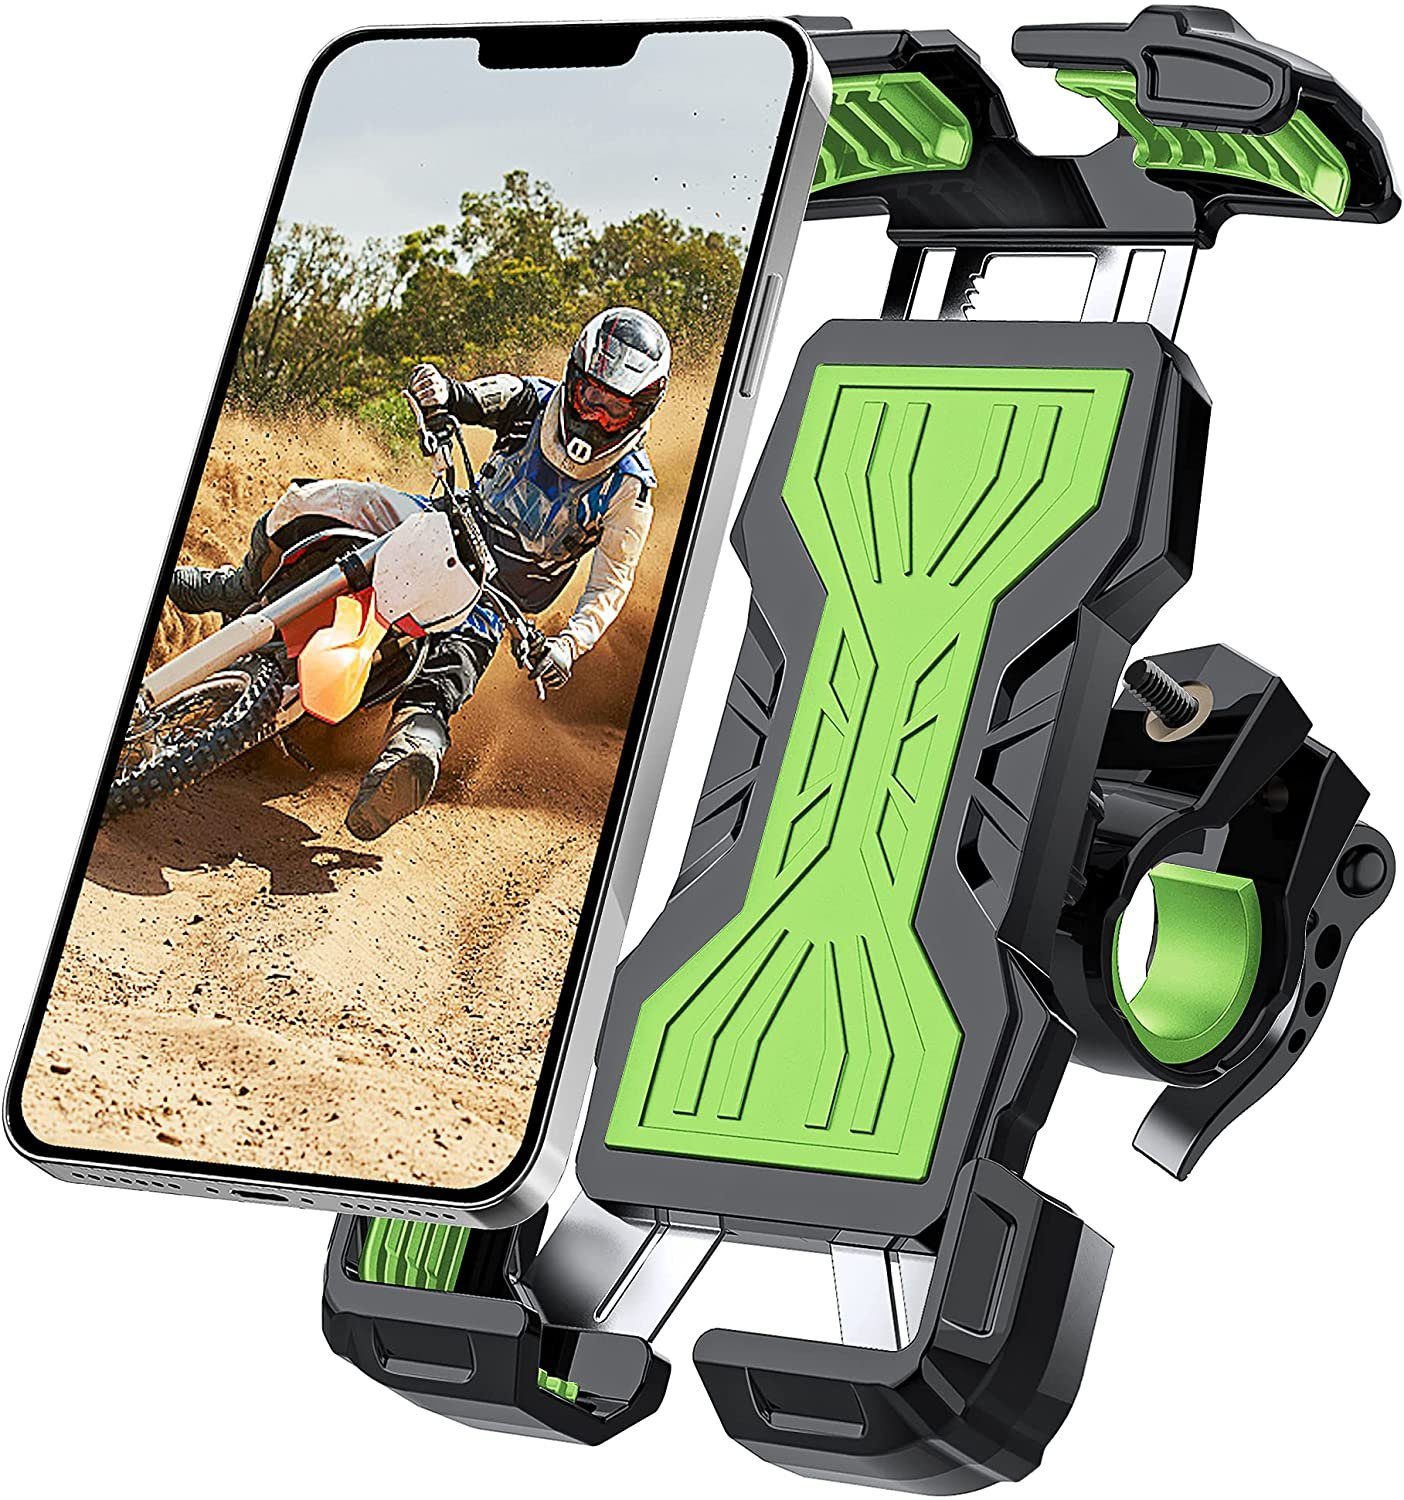 Fahrradhalterung Motorradhalterung Universal für iPhone Samsung Huawei Smartphone GPS Geräte ipow Handyhalterung Fahrrad Doppelschutz Handyhalter mit 360 Drehen 